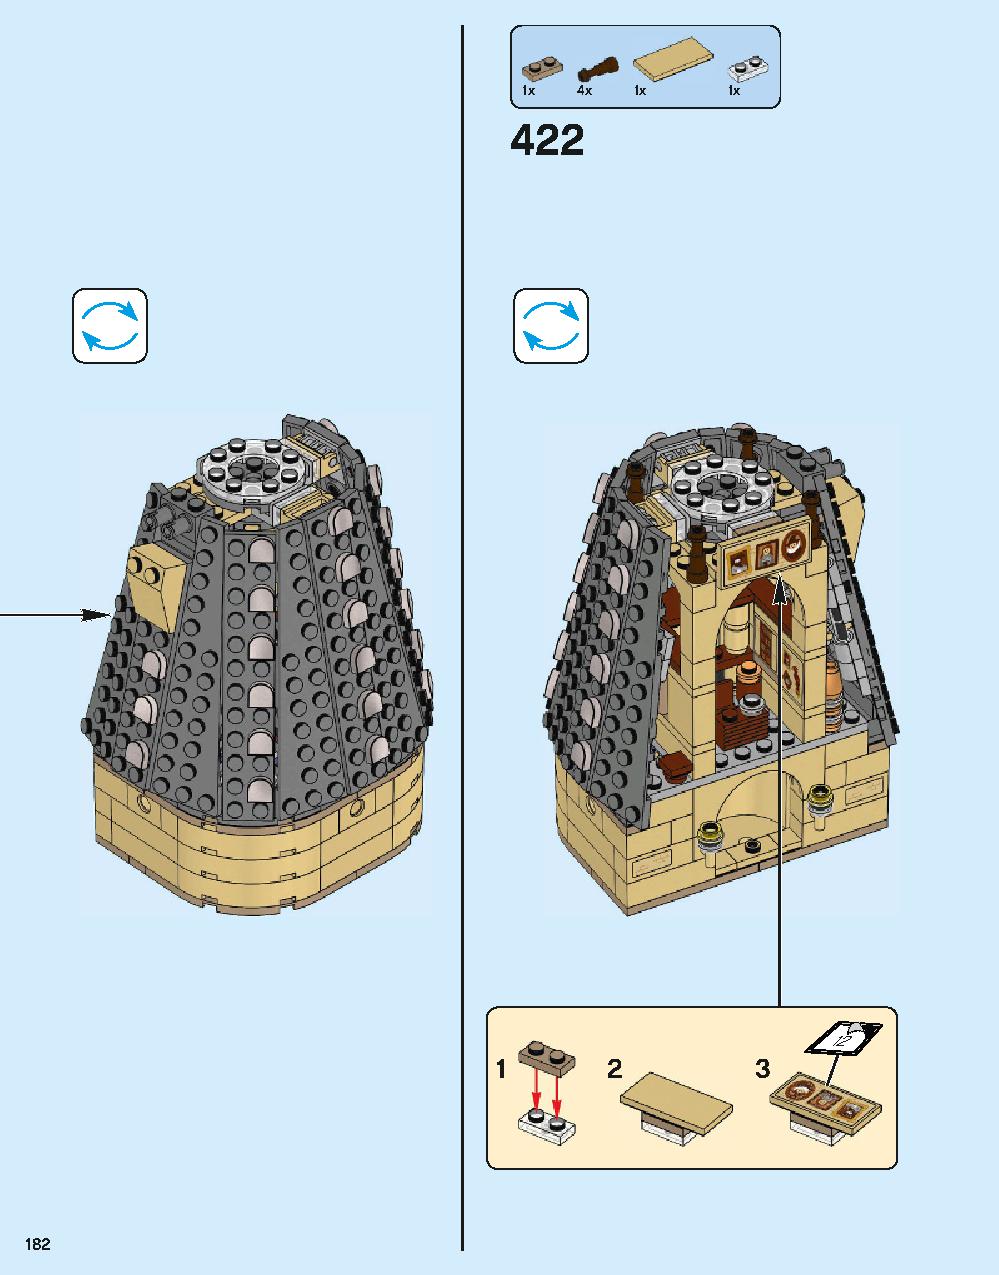 ホグワーツ城 71043 レゴの商品情報 レゴの説明書・組立方法 182 page